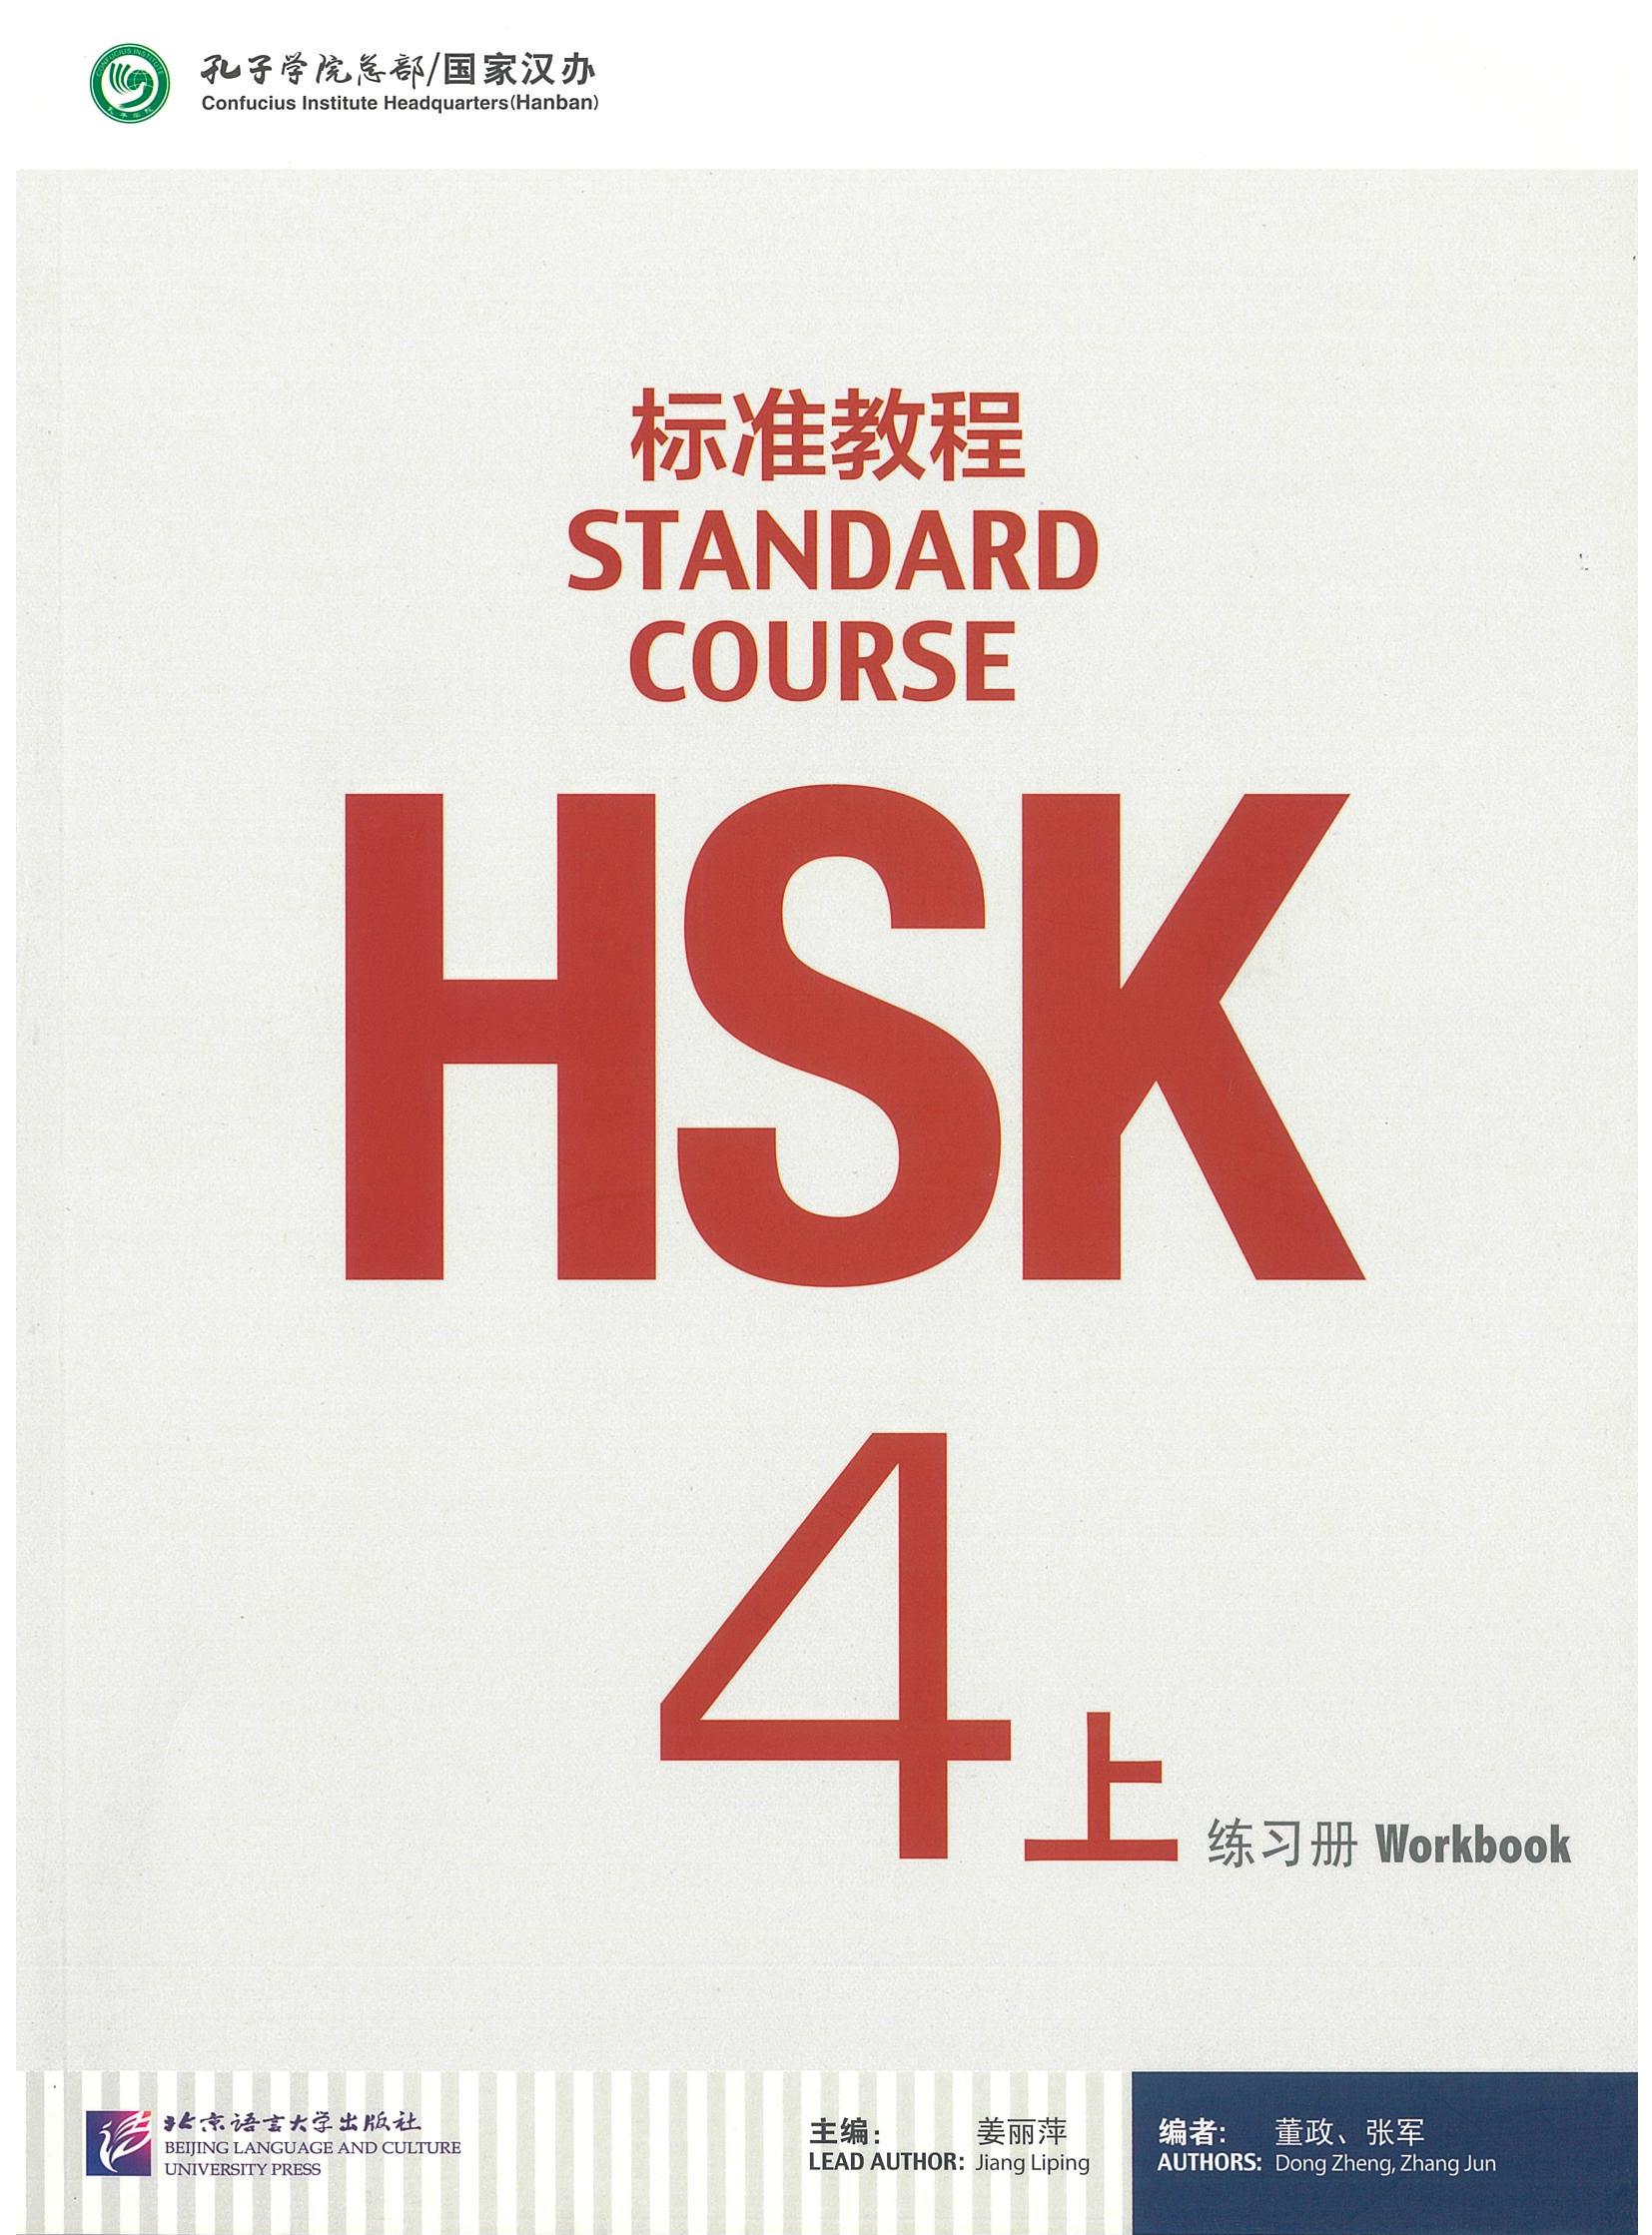 แบบฝึกหัด HSK / Stand Course HSK 4A Workbook / HSK 标准教程 4上 练习册